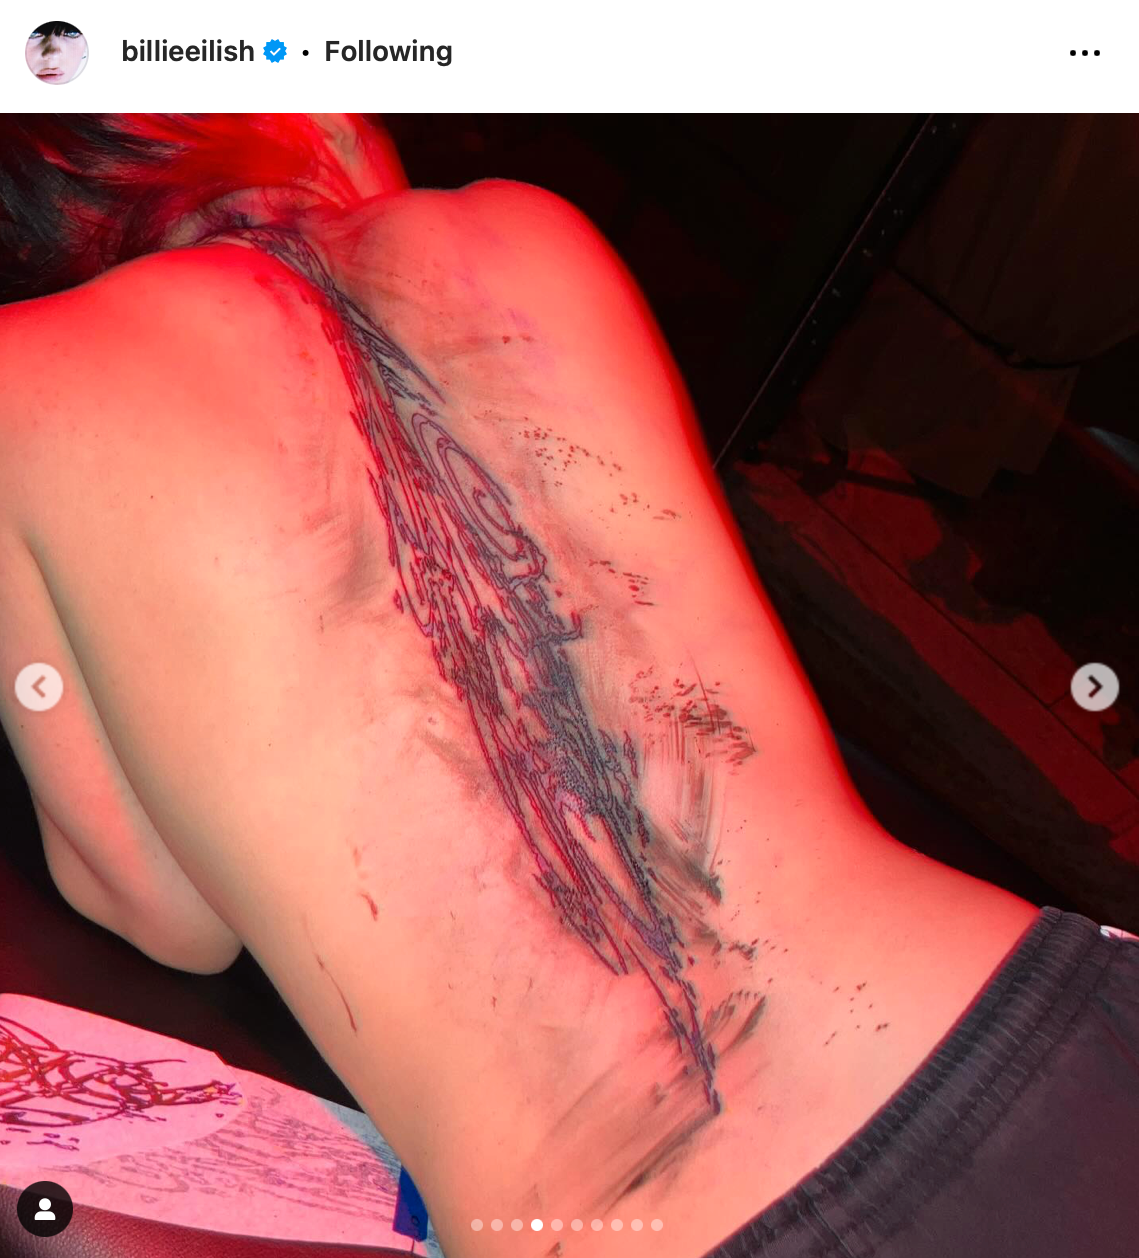 Billie Eilish la upp en bild på en rygg med en stor taturering.